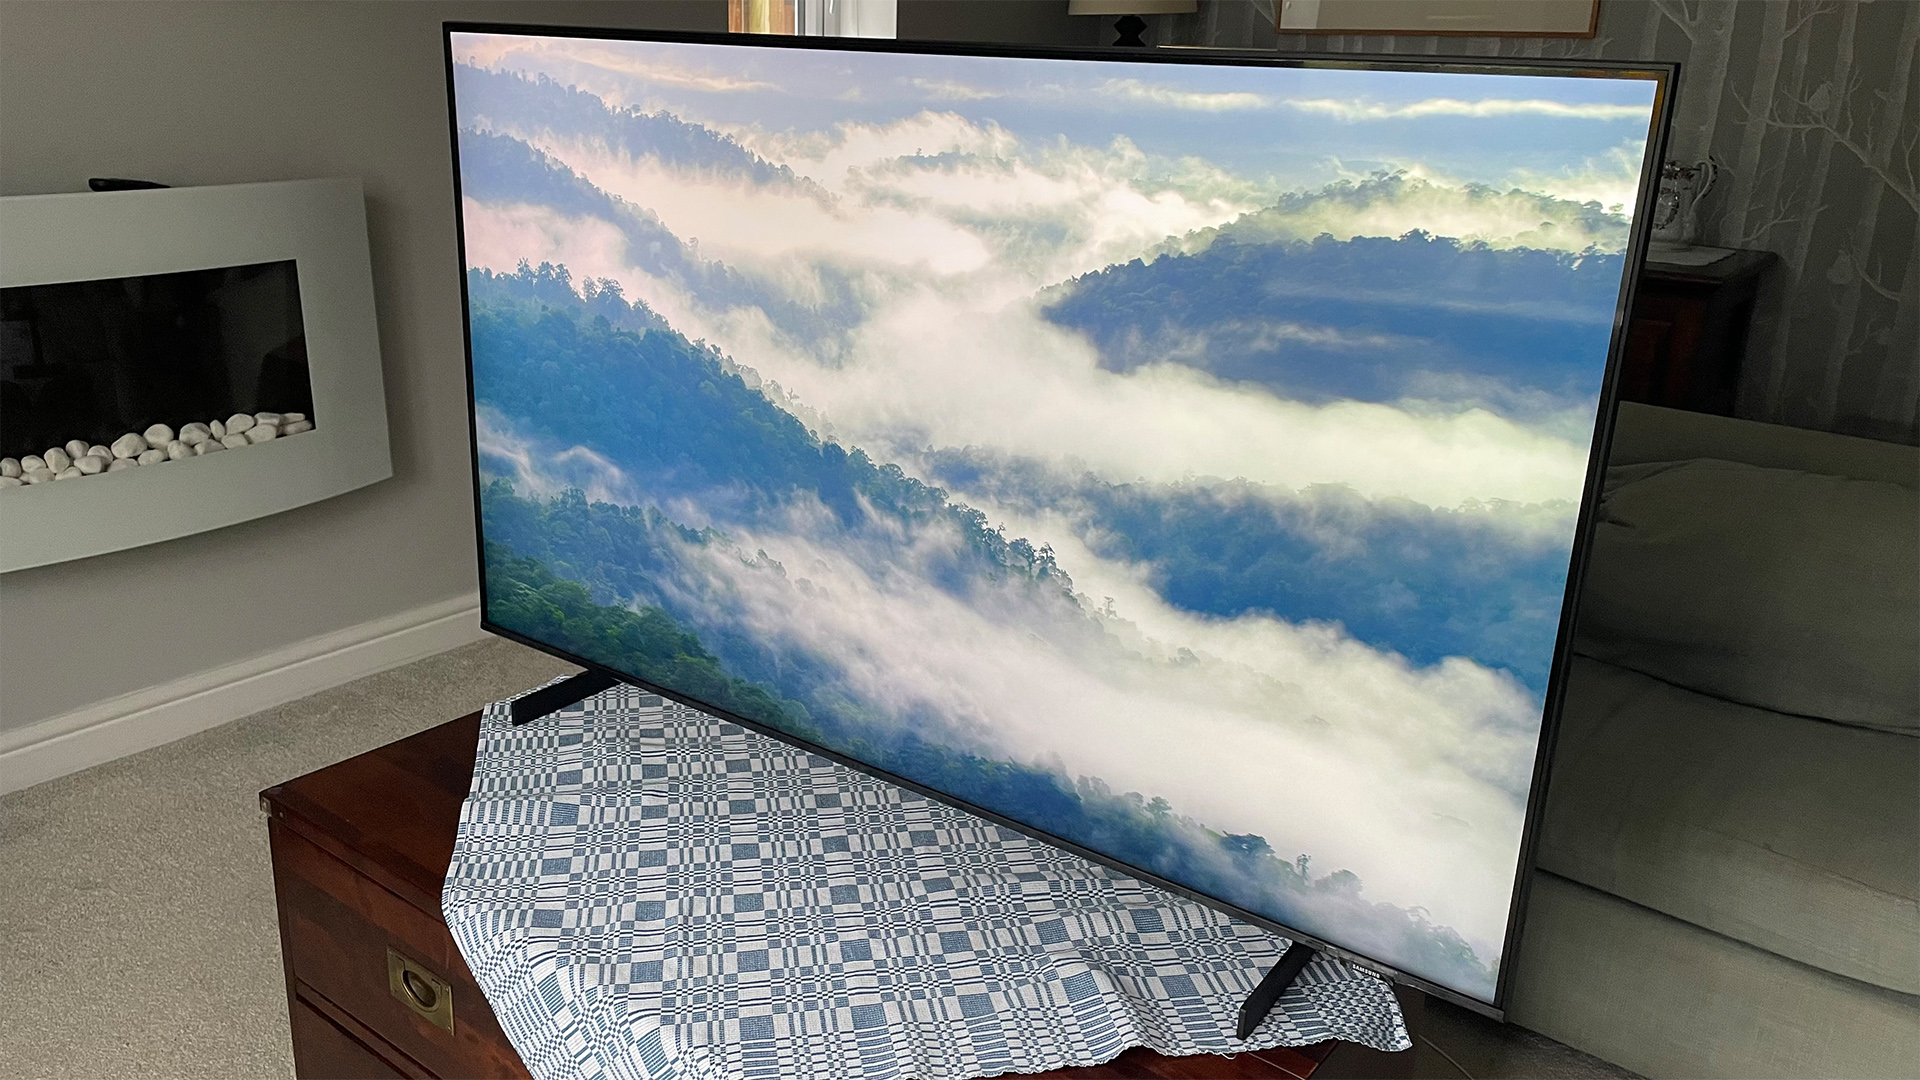 55-inch TV: Samsung UE55CU8000